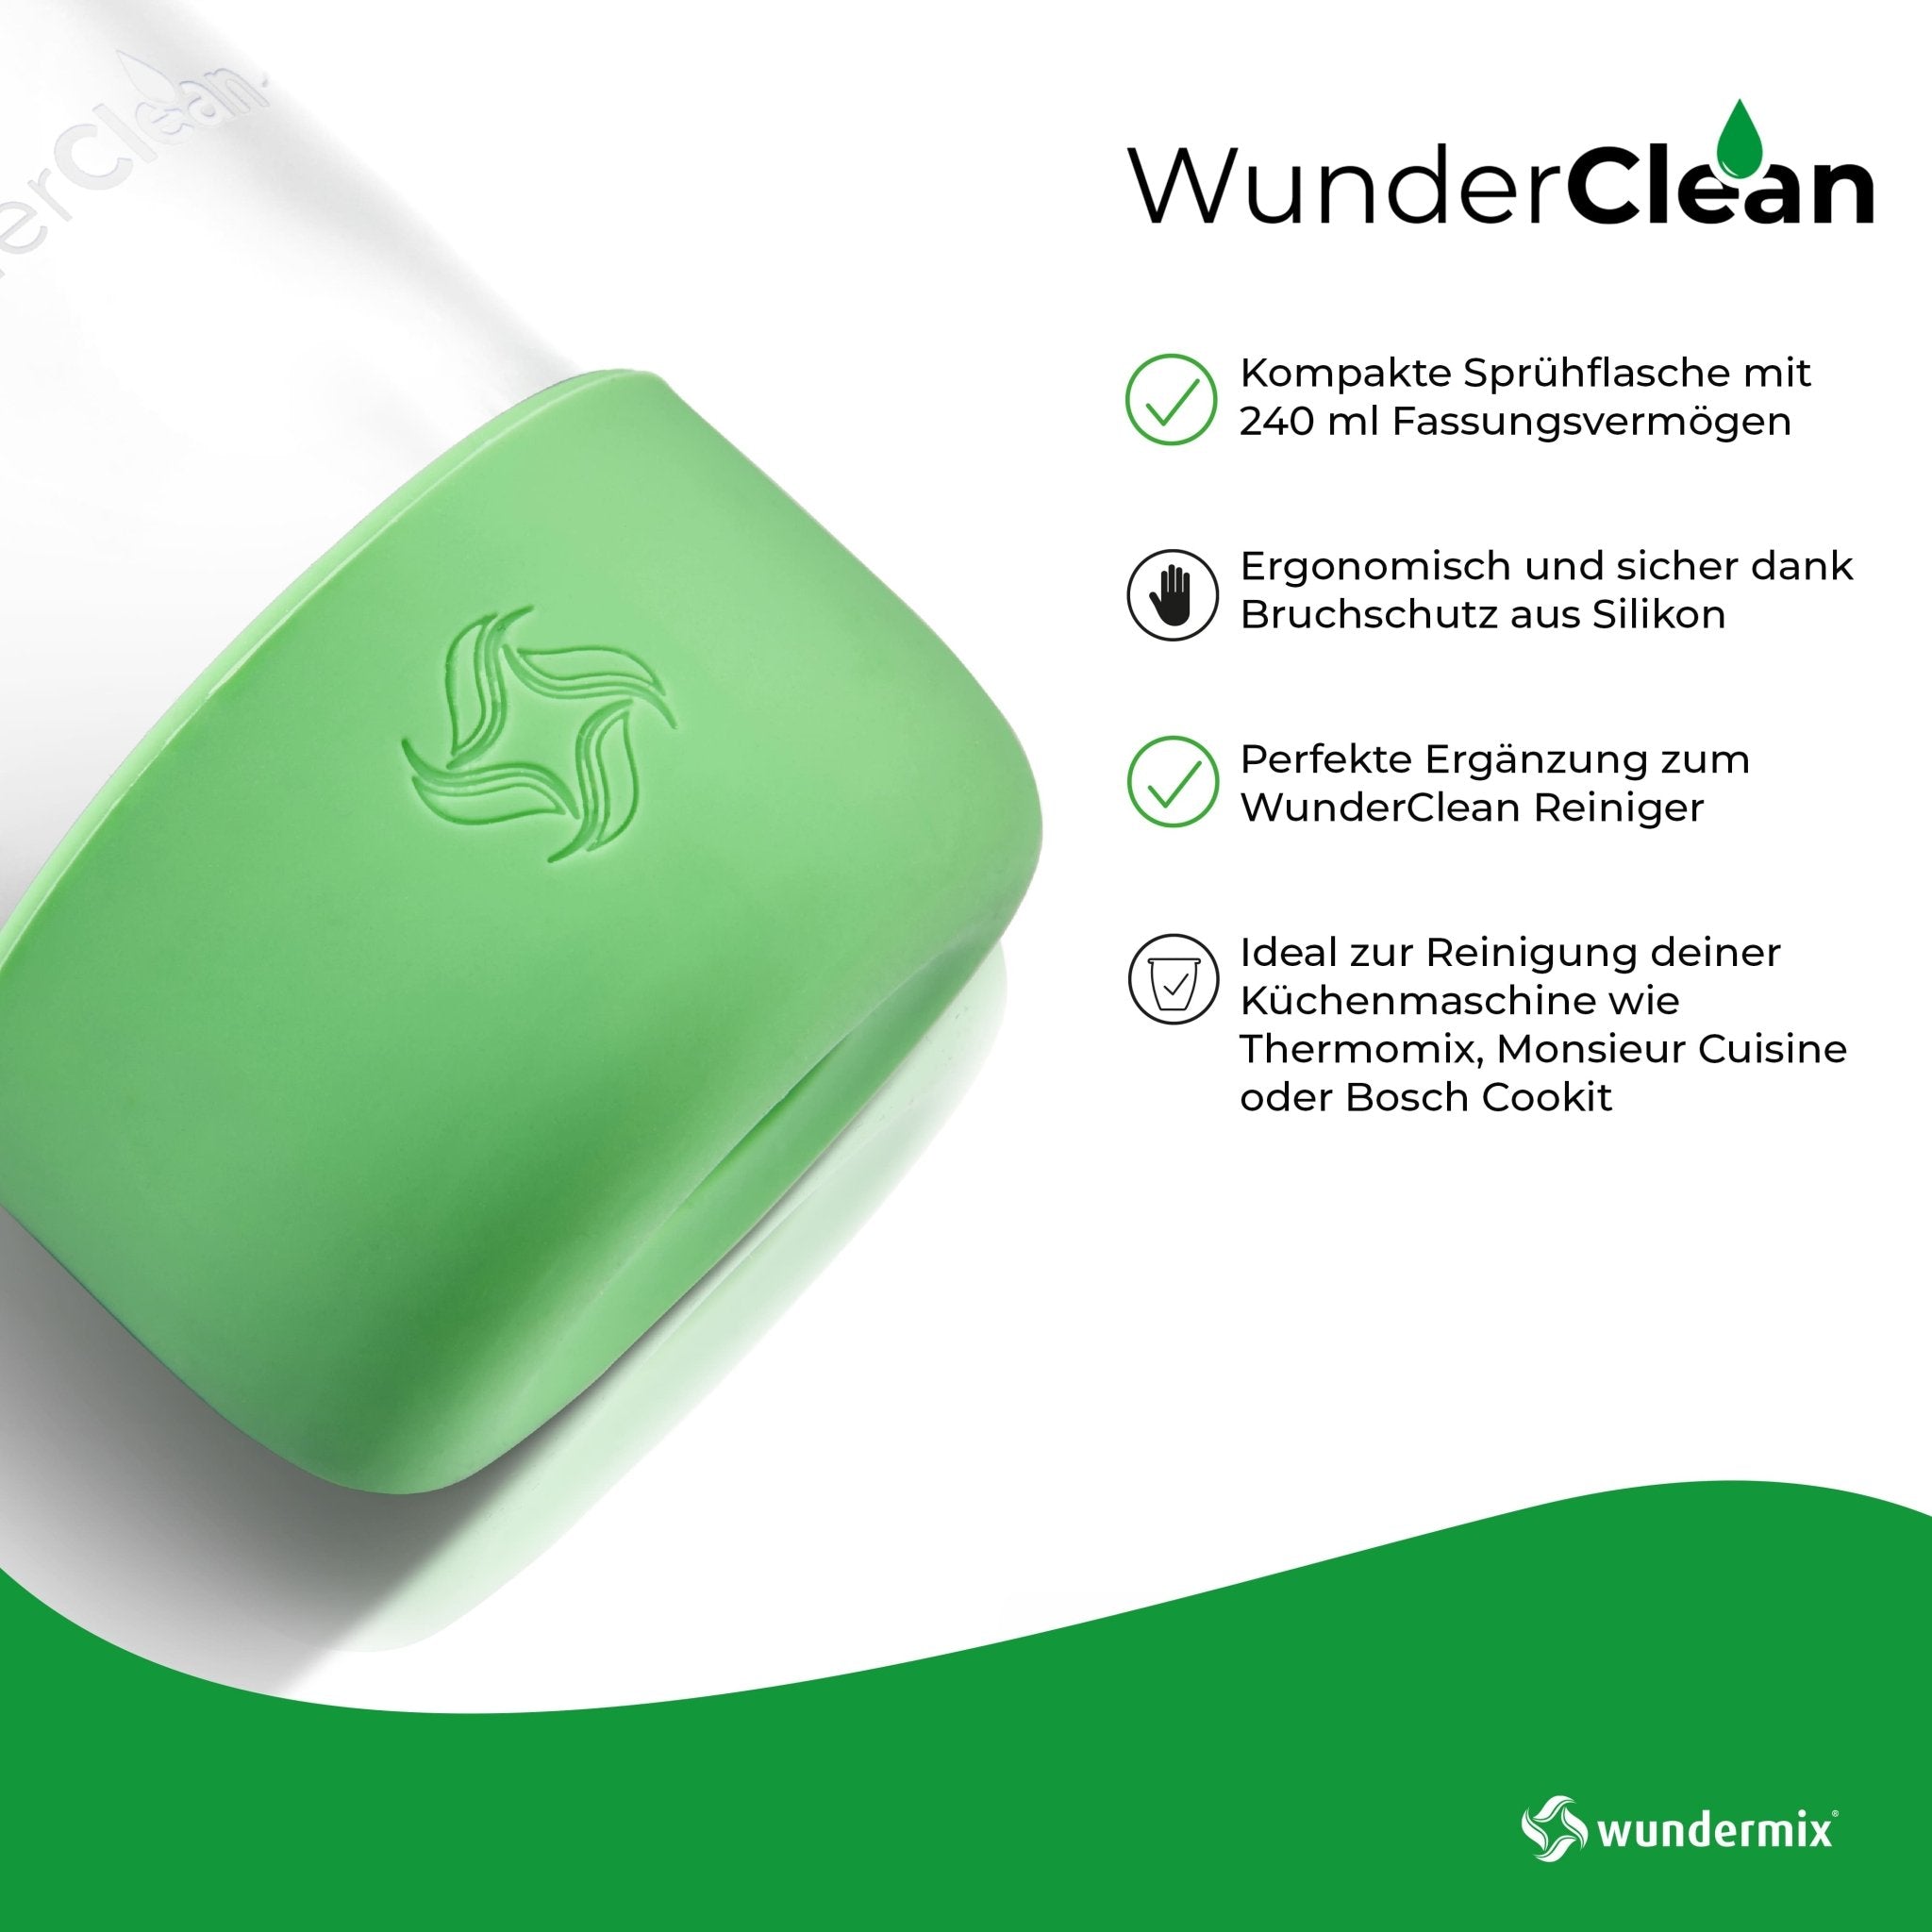 WunderClean Sprühflasche | 240 ml Glasflasche mit Silikon-Bruchschutz für WunderClean Reiniger - Wundermix GmbH